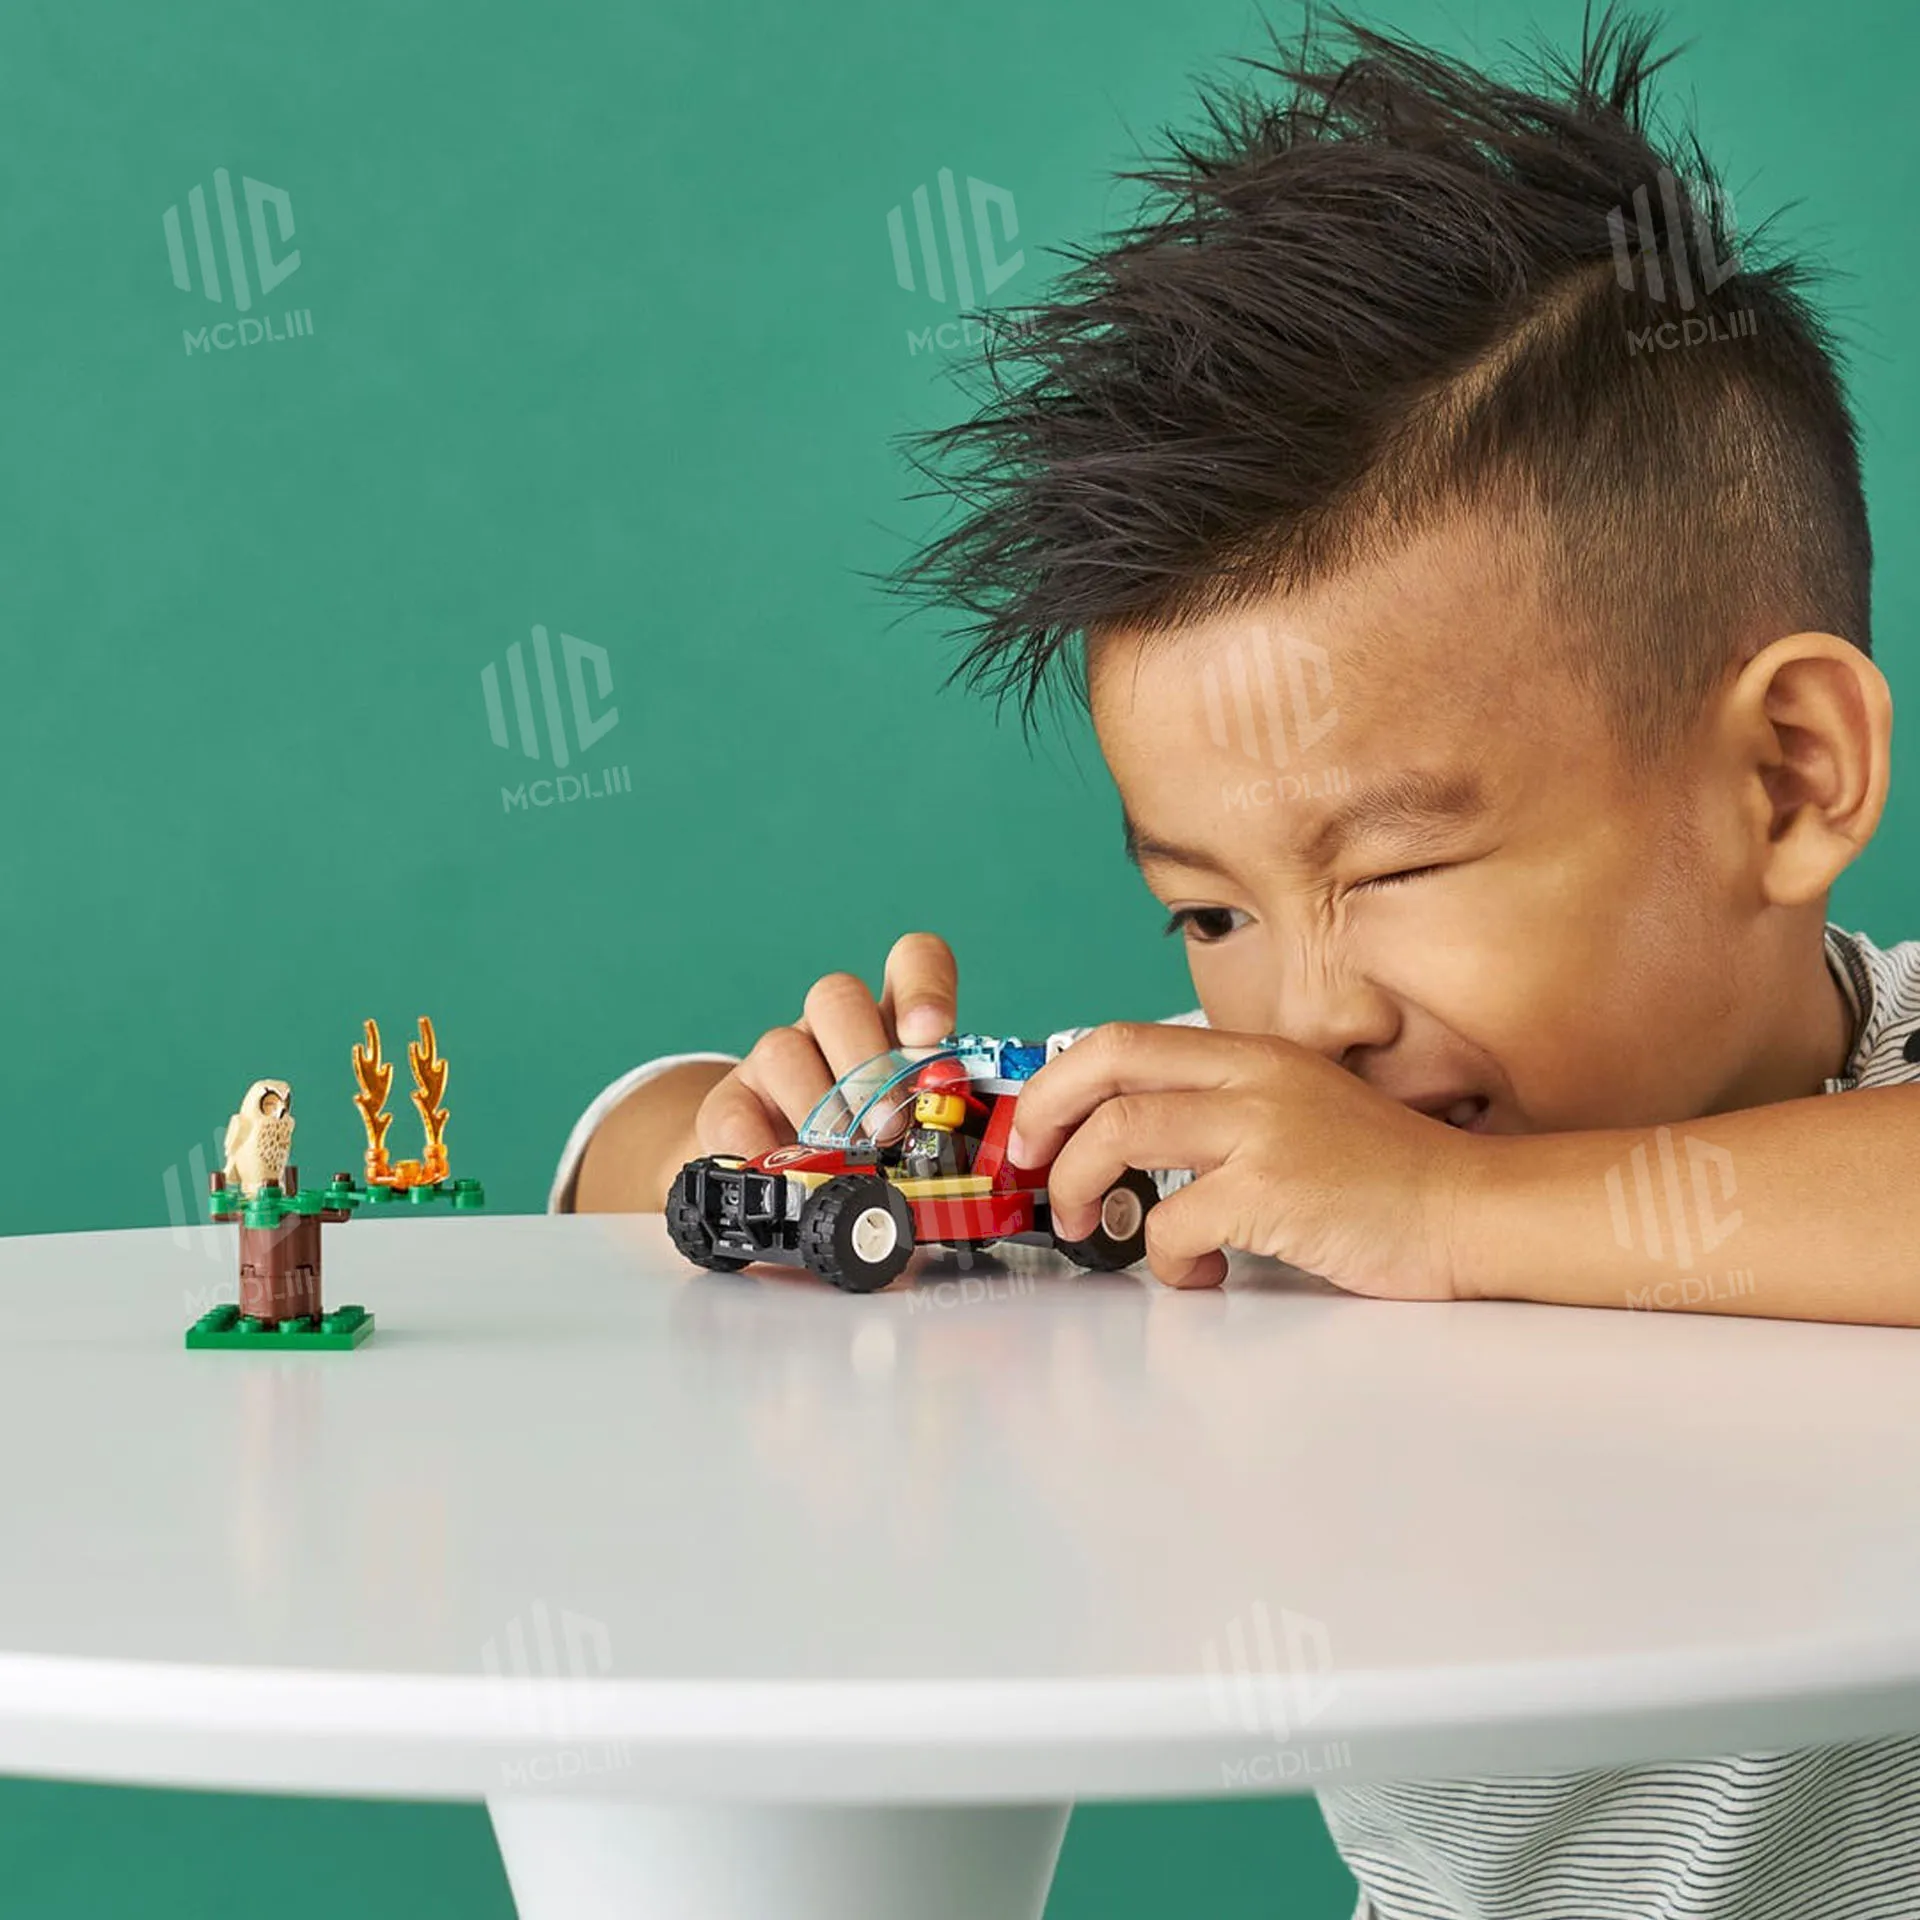 

Конструктор Lego «городской пожарный лес», Детский конструктор, игрушки для детей, мини-фигурки Lego, Оригинальный конструктор, подарок для дет...